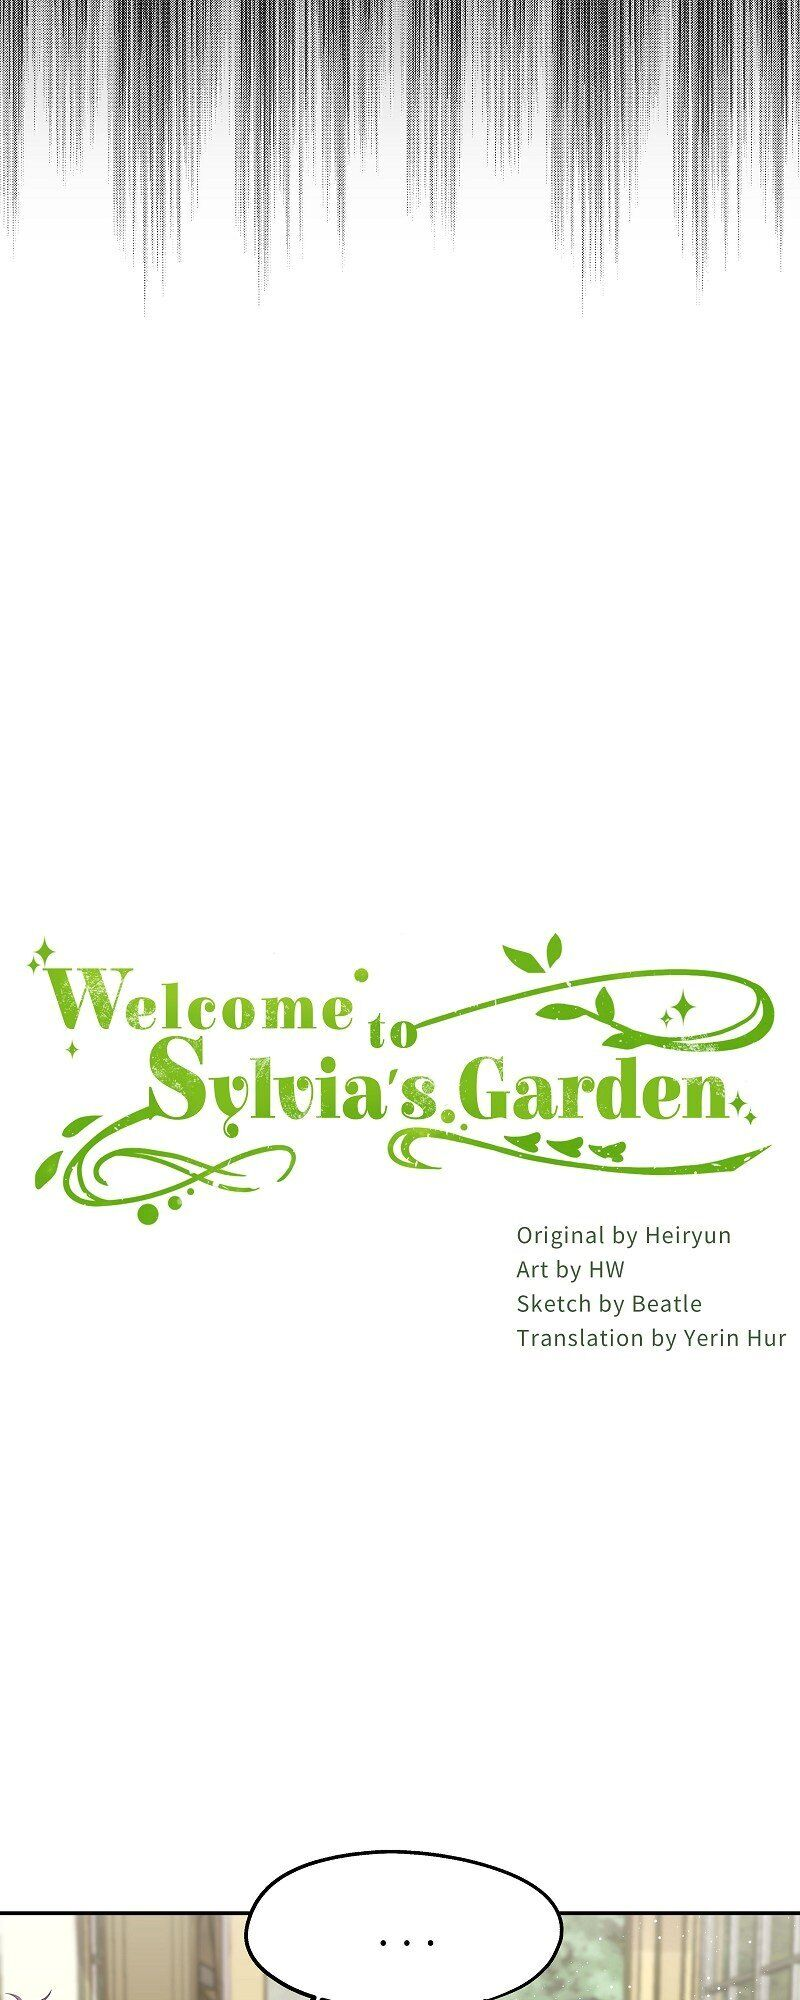 Welcome to Sylvia's Garden 2 (11)